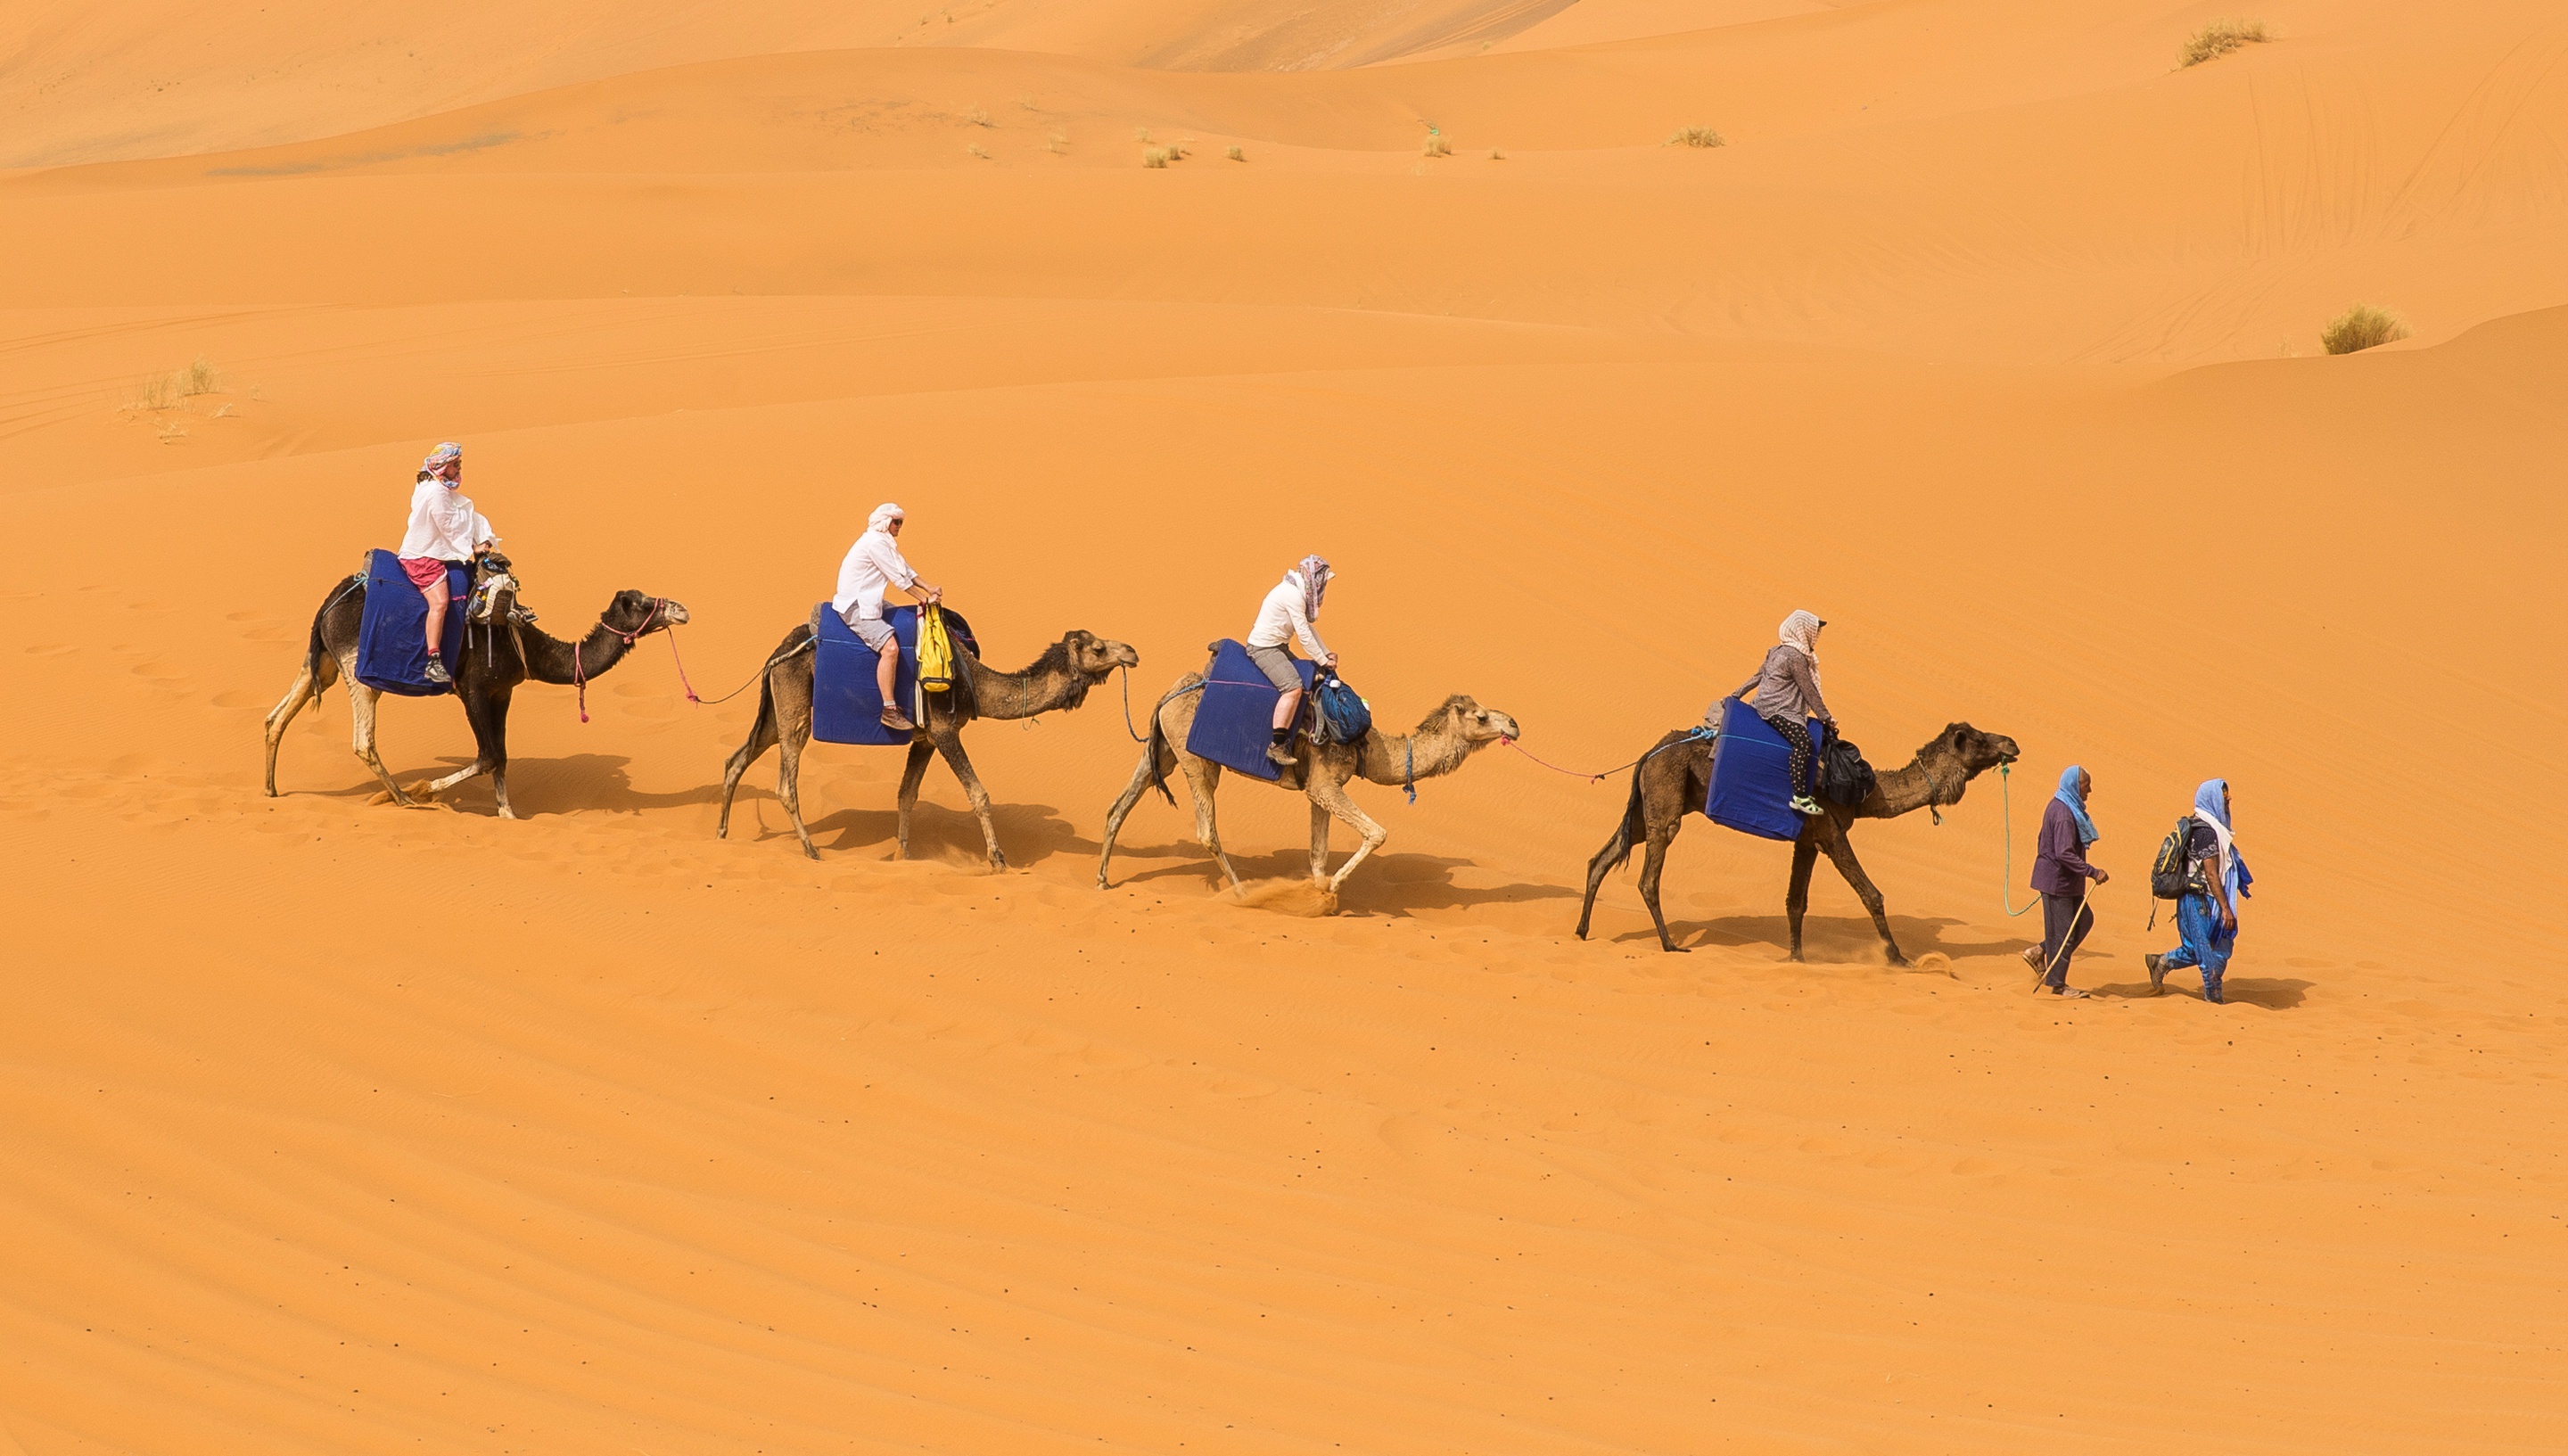 Название каравана. Мехари верблюд. Бедуин на верблюде. Караван с верблюдами в пустыне. Бедуин с верблюдом в пустыне.